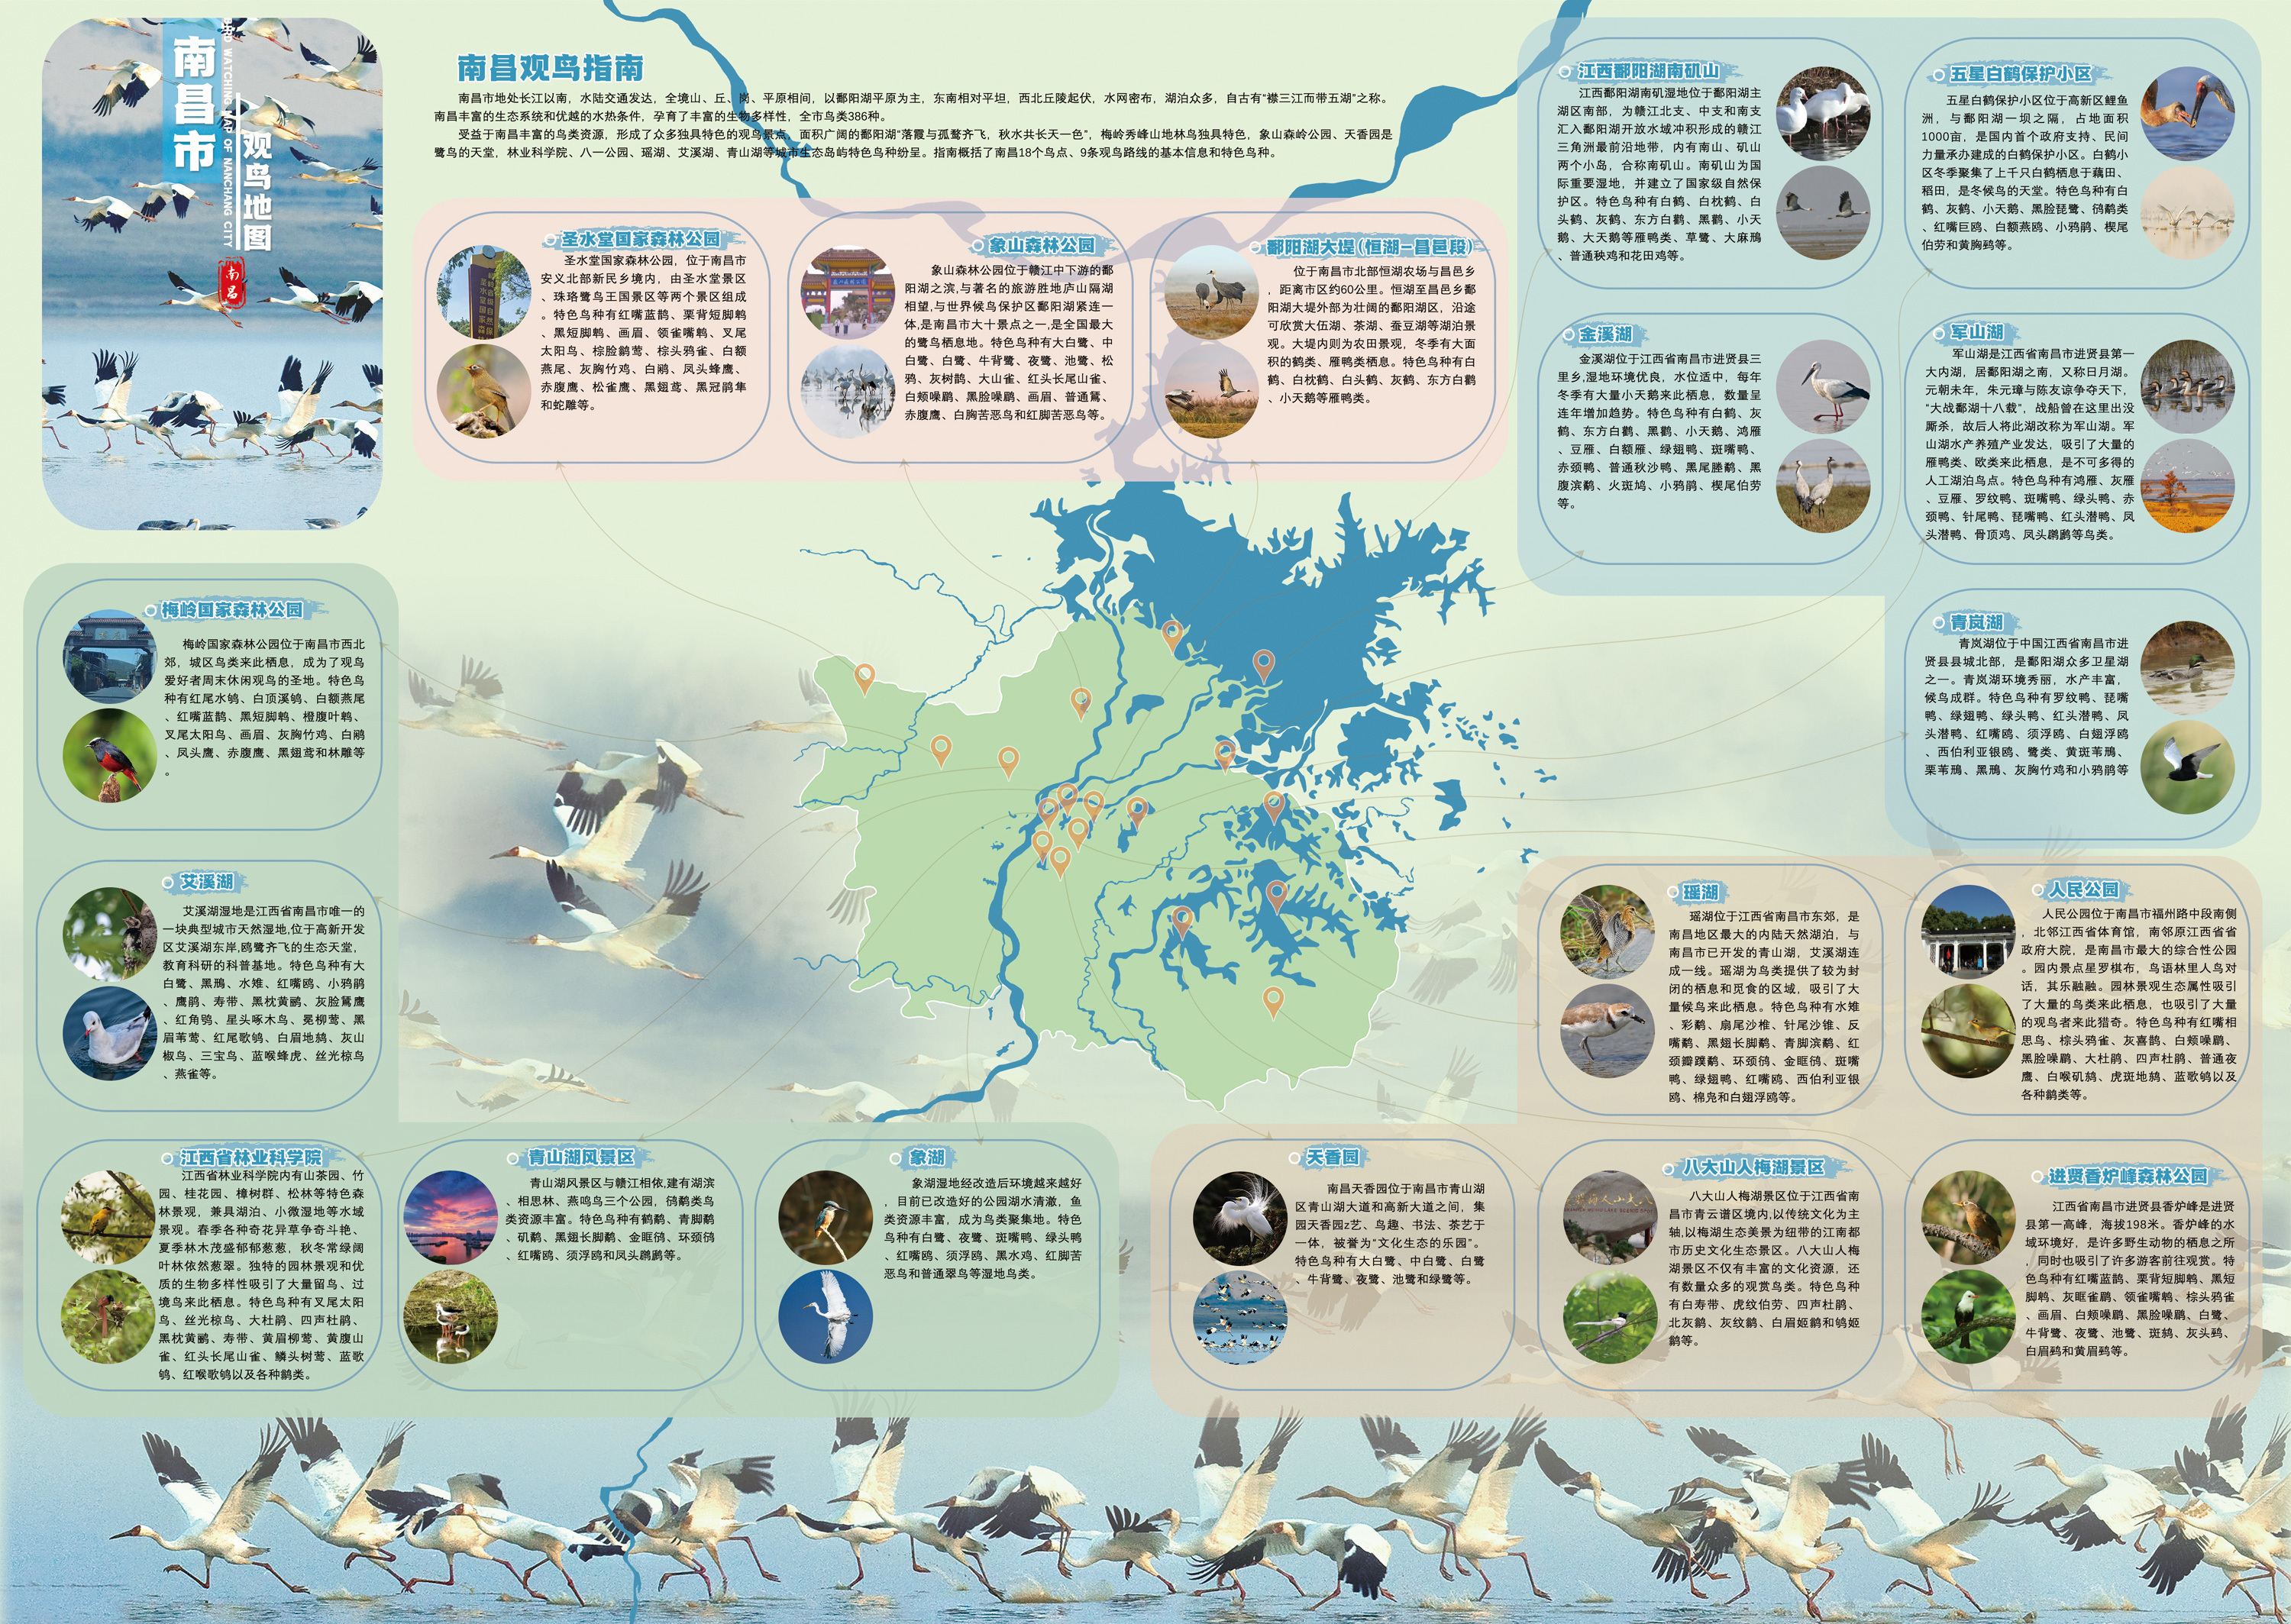 鄱阳湖国际观鸟季南昌观鸟攻略 8条线路请查收